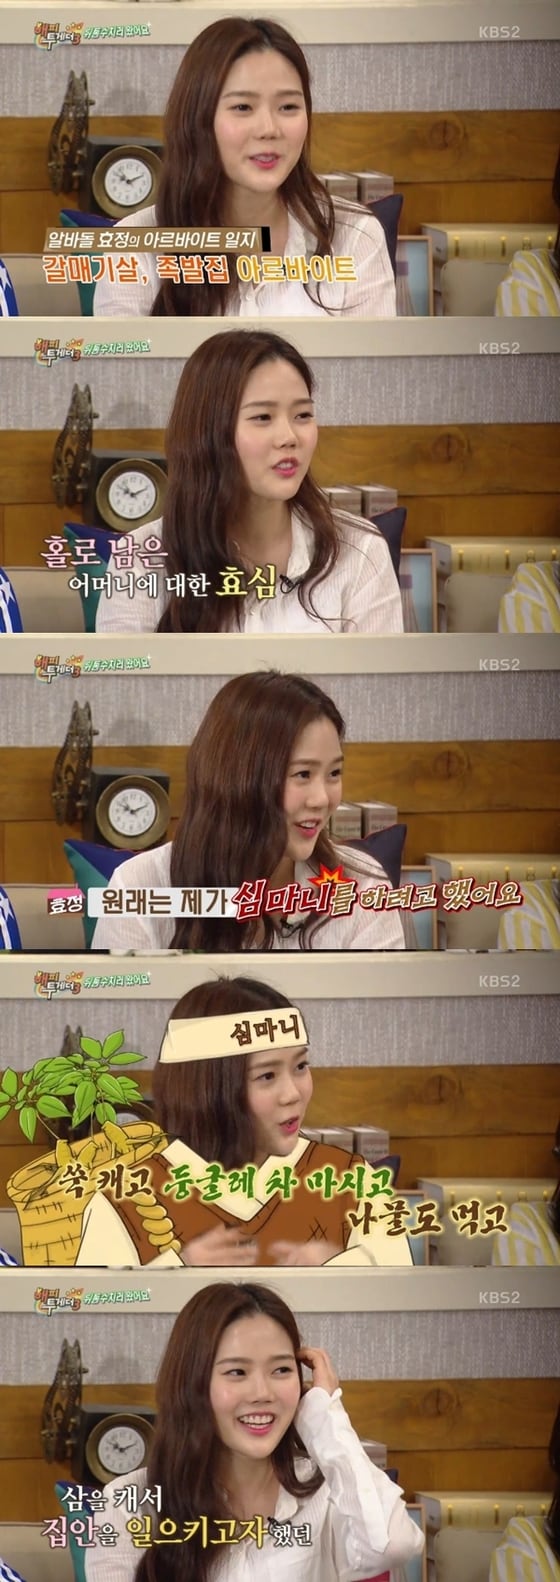 오마이걸 효정이 어릴 적 장래희망을 밝혔다. © News1star / KBS2 '해피투게더3' 캡처